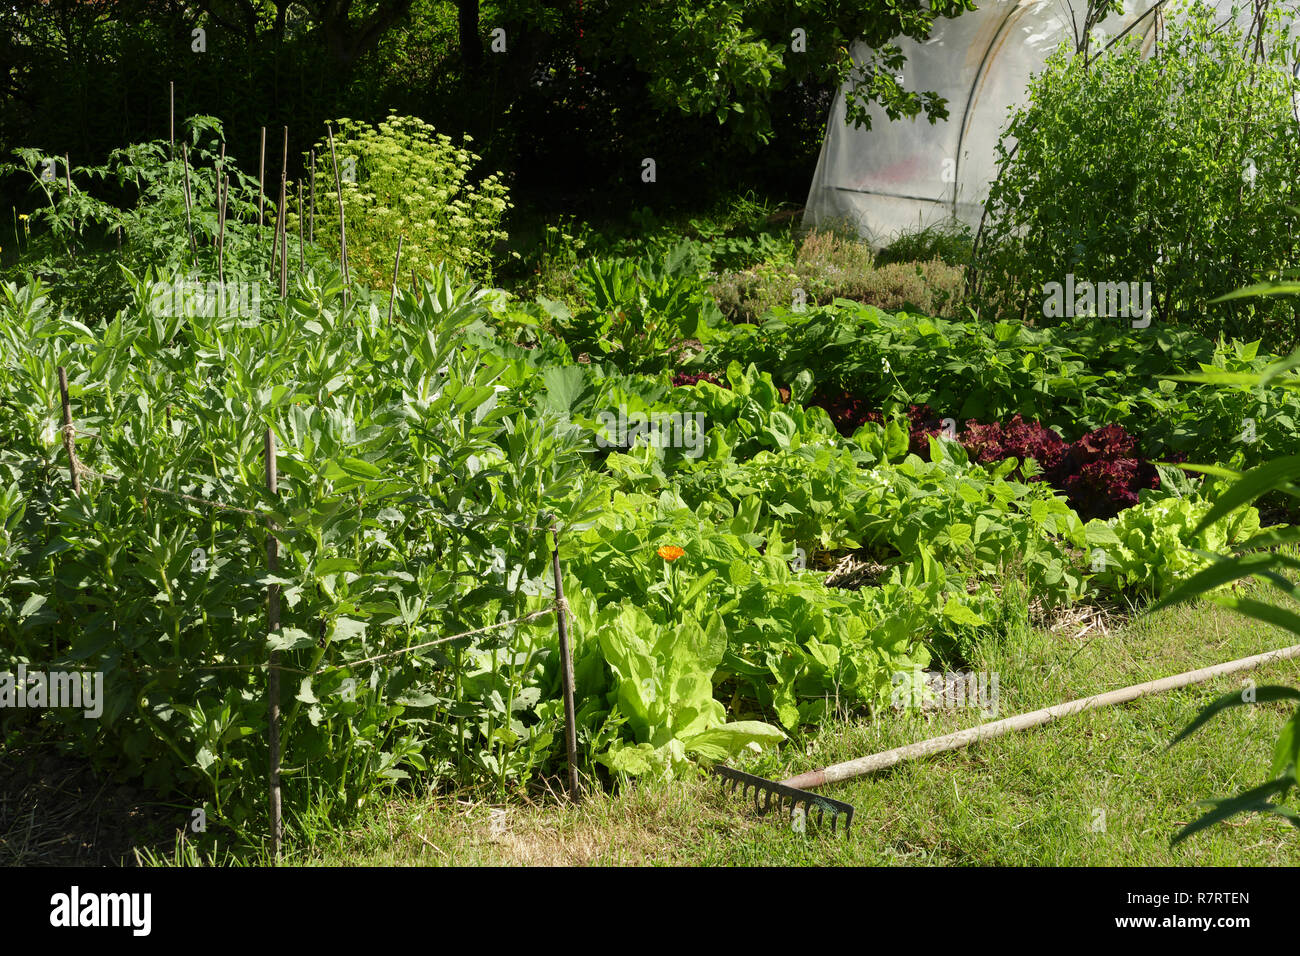 Coltivazione di verdure in giardino (fave, insalate, fagiolini piselli supportato da canne, le piante di pomodoro, prezzemolo, piante di zucchine). Foto Stock